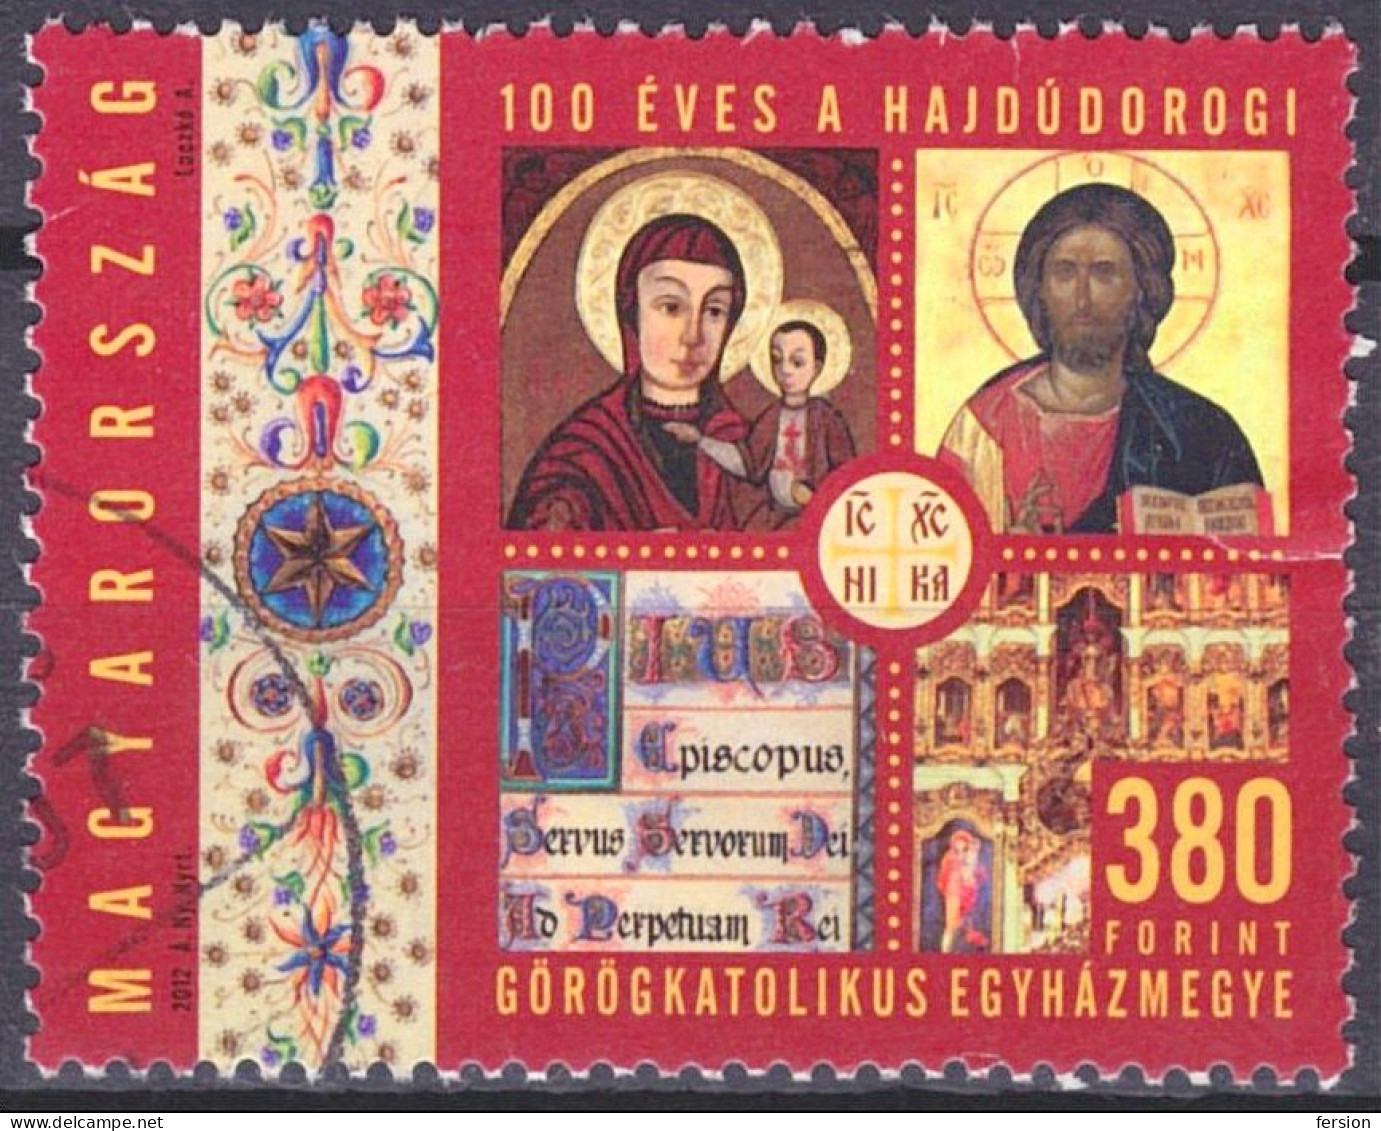 Orthodox Greek Catholic CHURCH Diocese In Hungary Hajdudorog / Icon Icons - Jesus - USED - Hungary 2012 - Religion